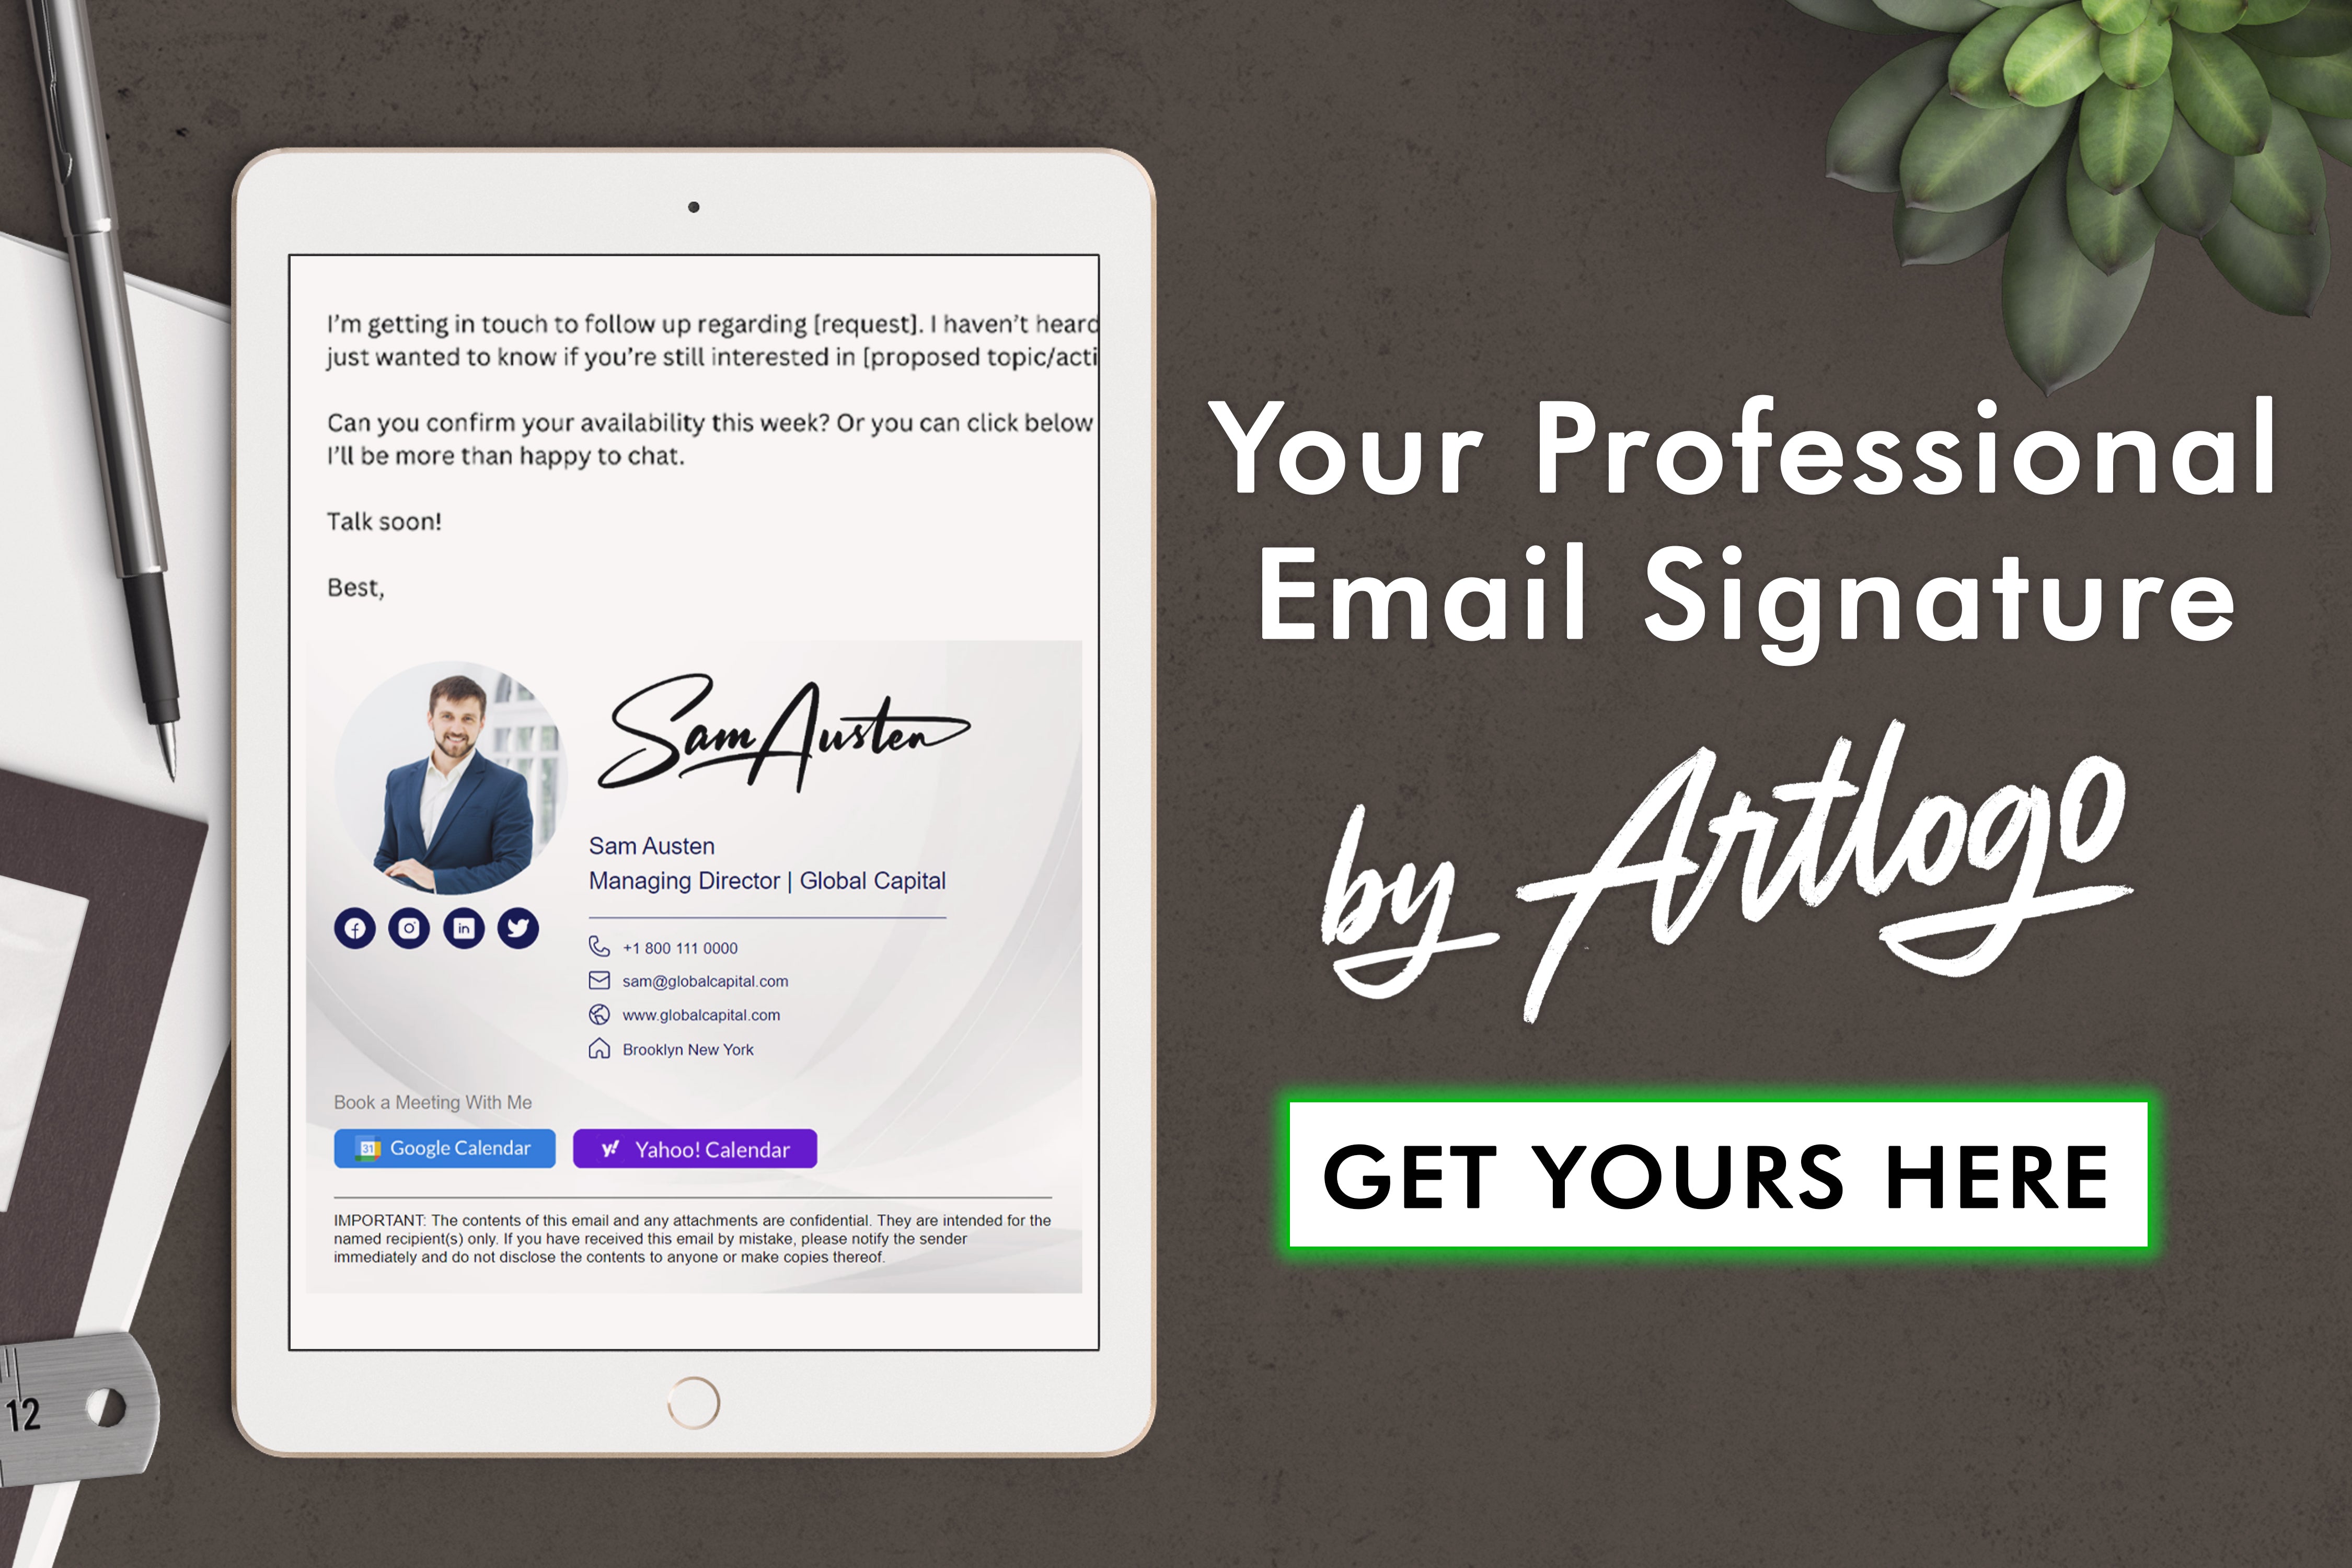 Tauchen Sie ein in die Welt der E-Mail-Signaturen und lernen Sie, wie Sie eine einzigartige und professionelle Signatur erstellen, die Sie im digitalen Raum auszeichnet.